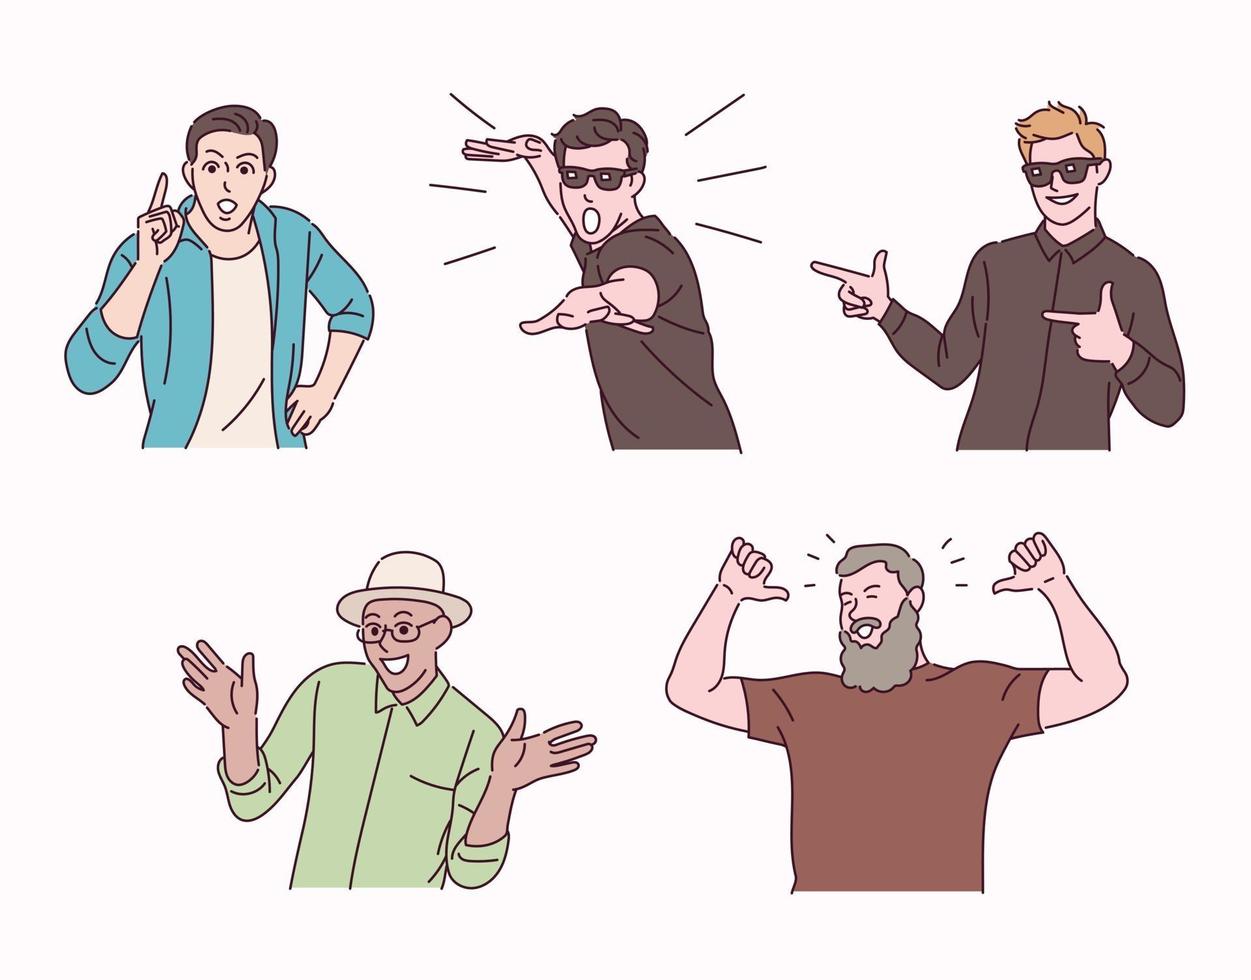 uomini con espressioni carine e attive. persone di vari gesti. illustrazioni di disegno vettoriale stile disegnato a mano.